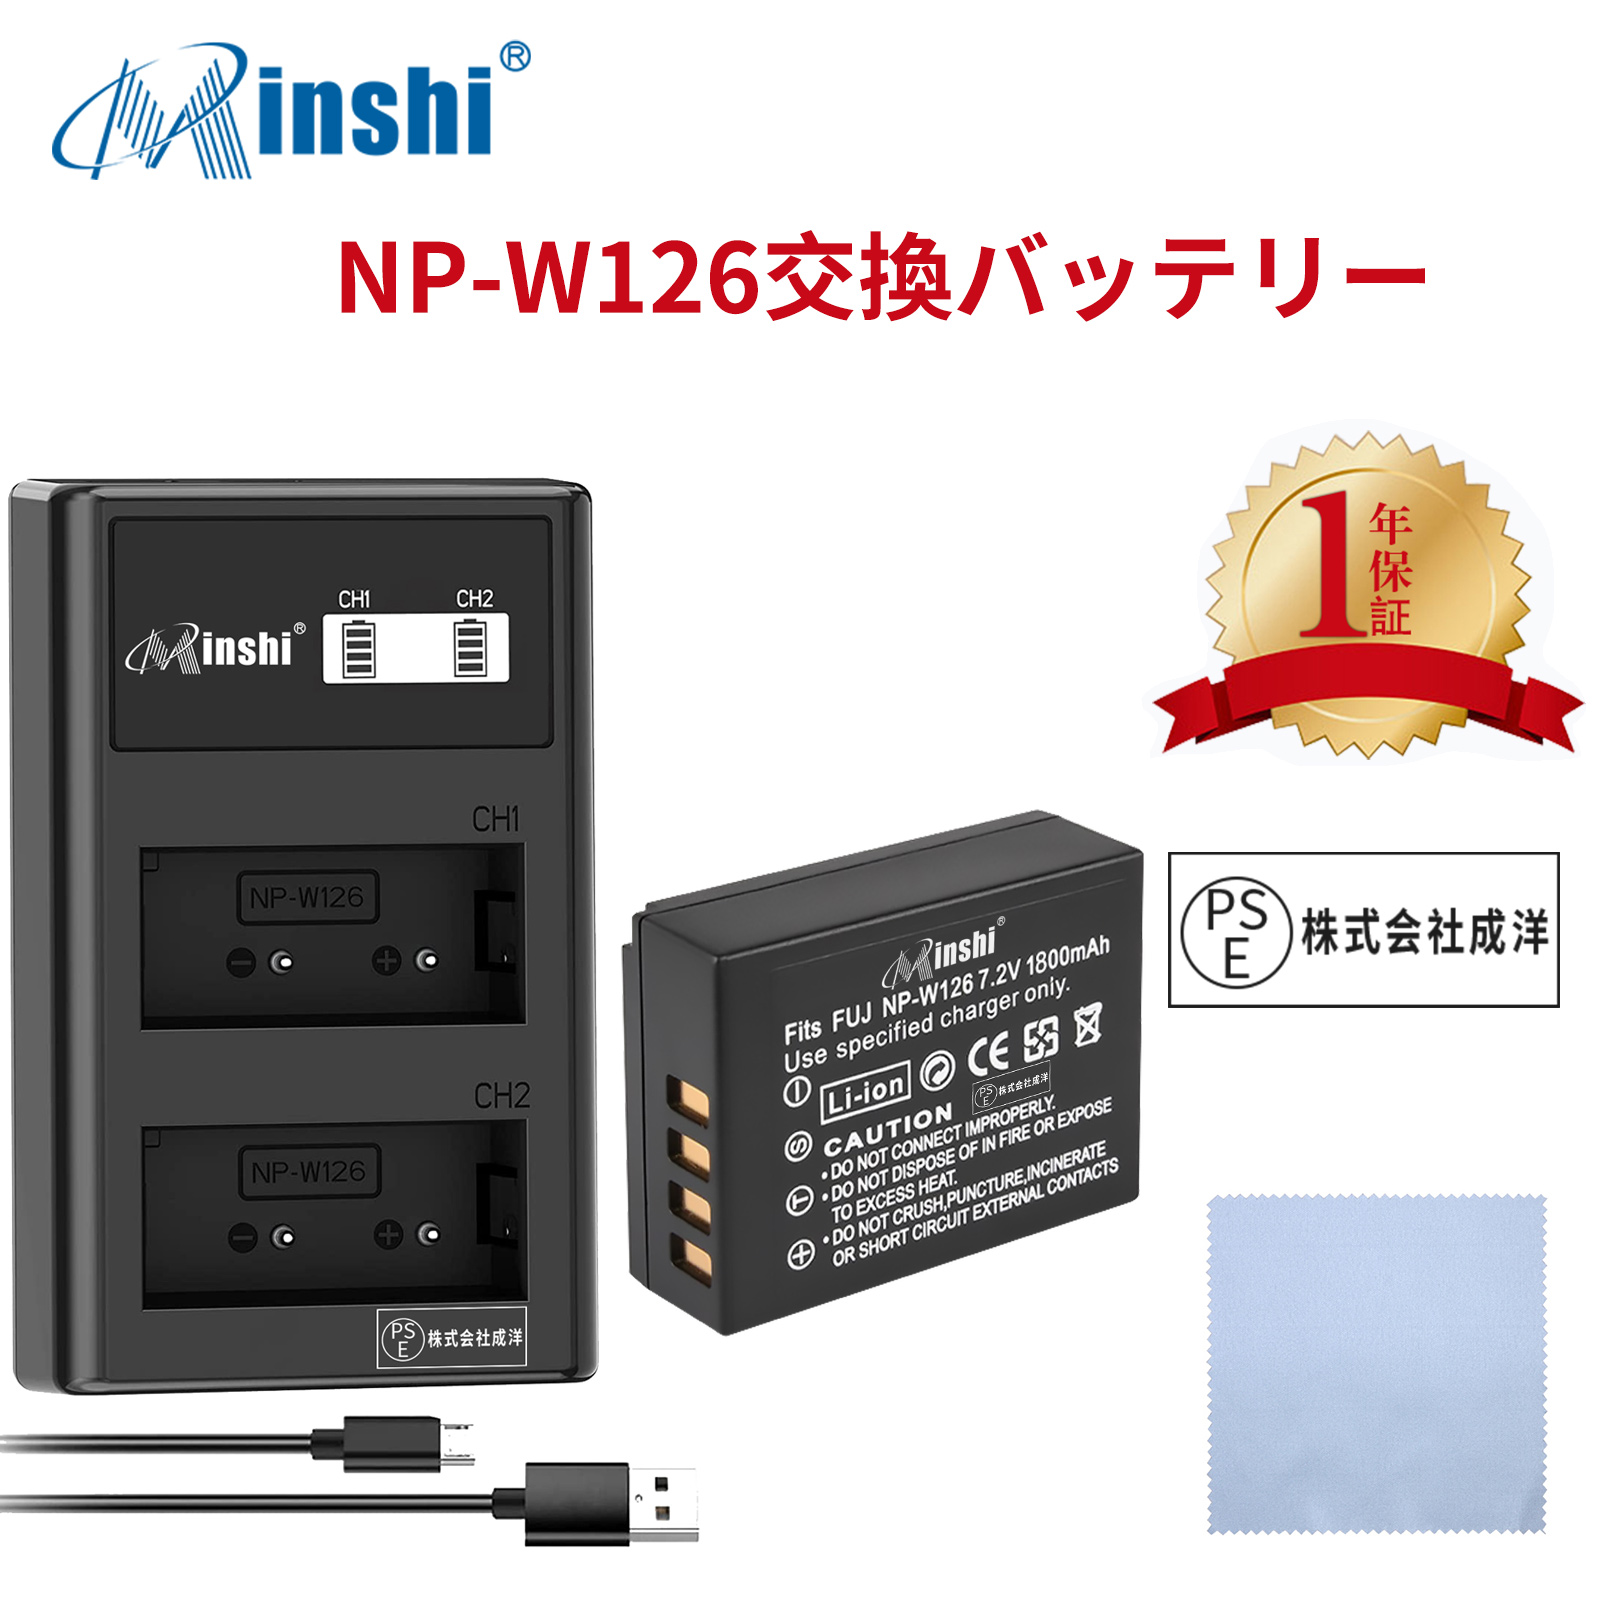 【セット】minshi FUJIFILM NP-W126 NP-W126S 【1800mAh 7.2V】 NP-W126 NP-W126S高品質 NP-W126S NP-W126互換バッテリー